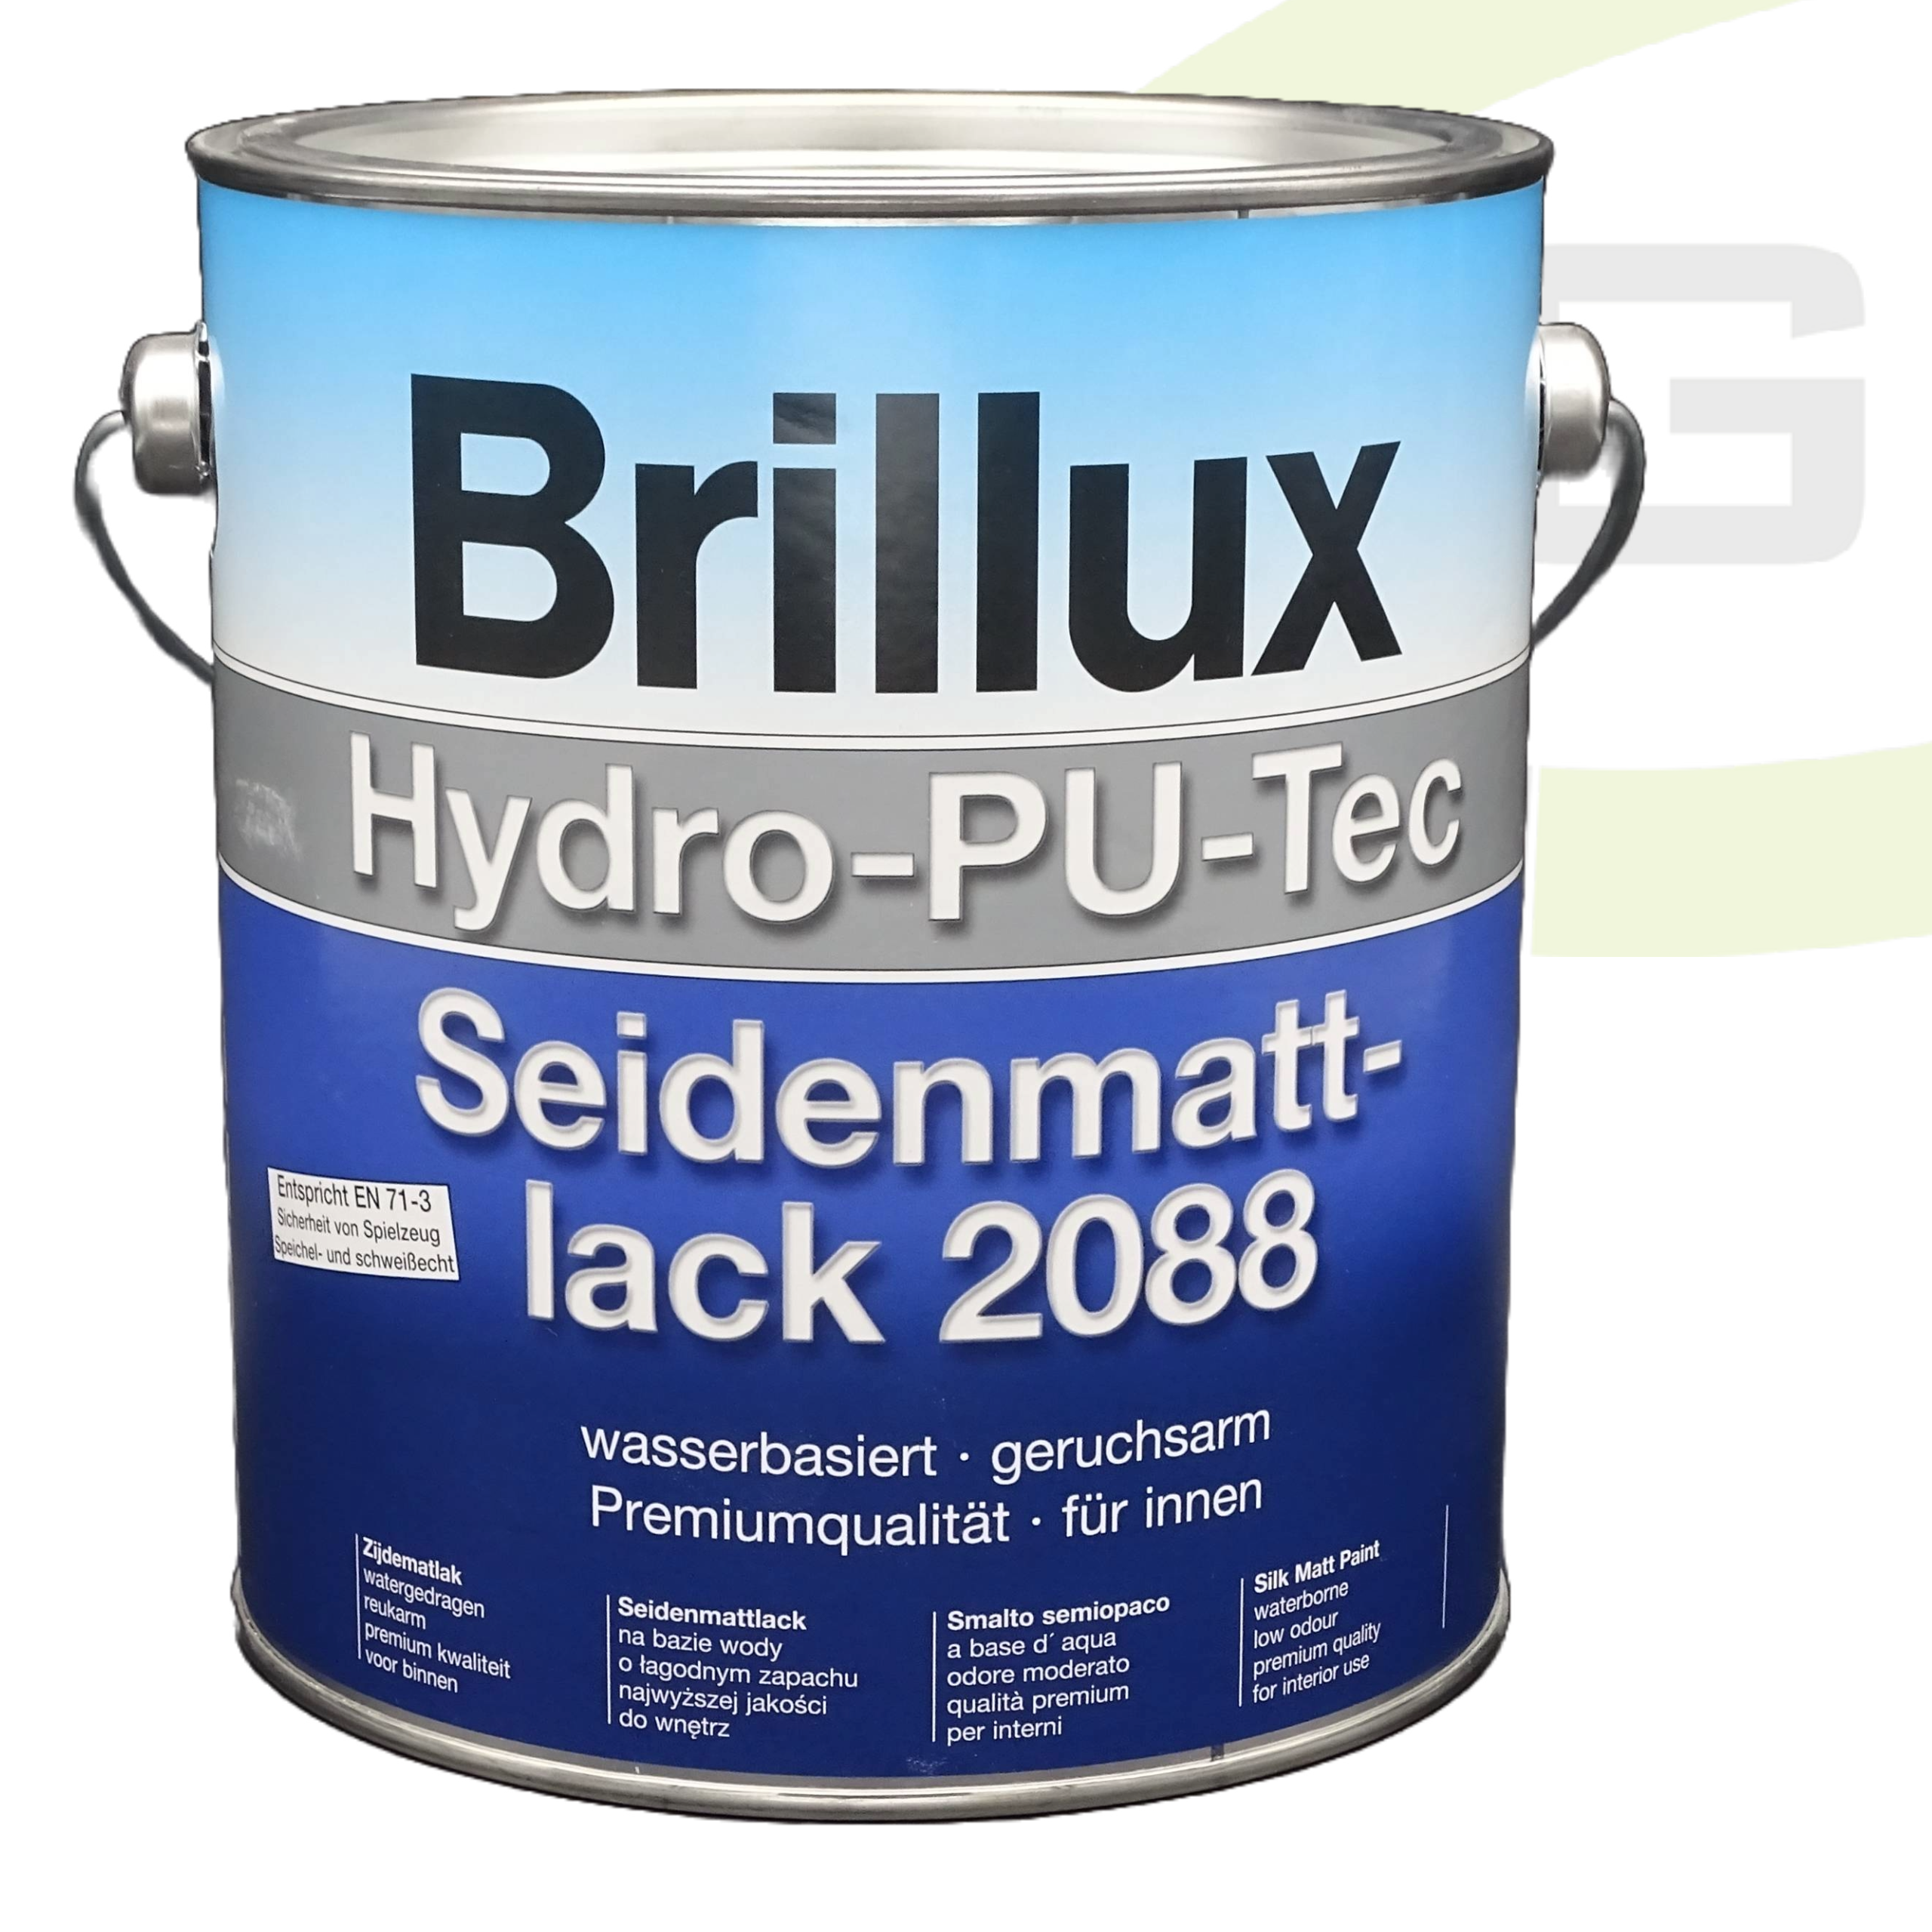 Brillux Hydro-PU-Tec Seidenmattlack 2088 - 3.00 Liter / Wasserbasierter Endlack